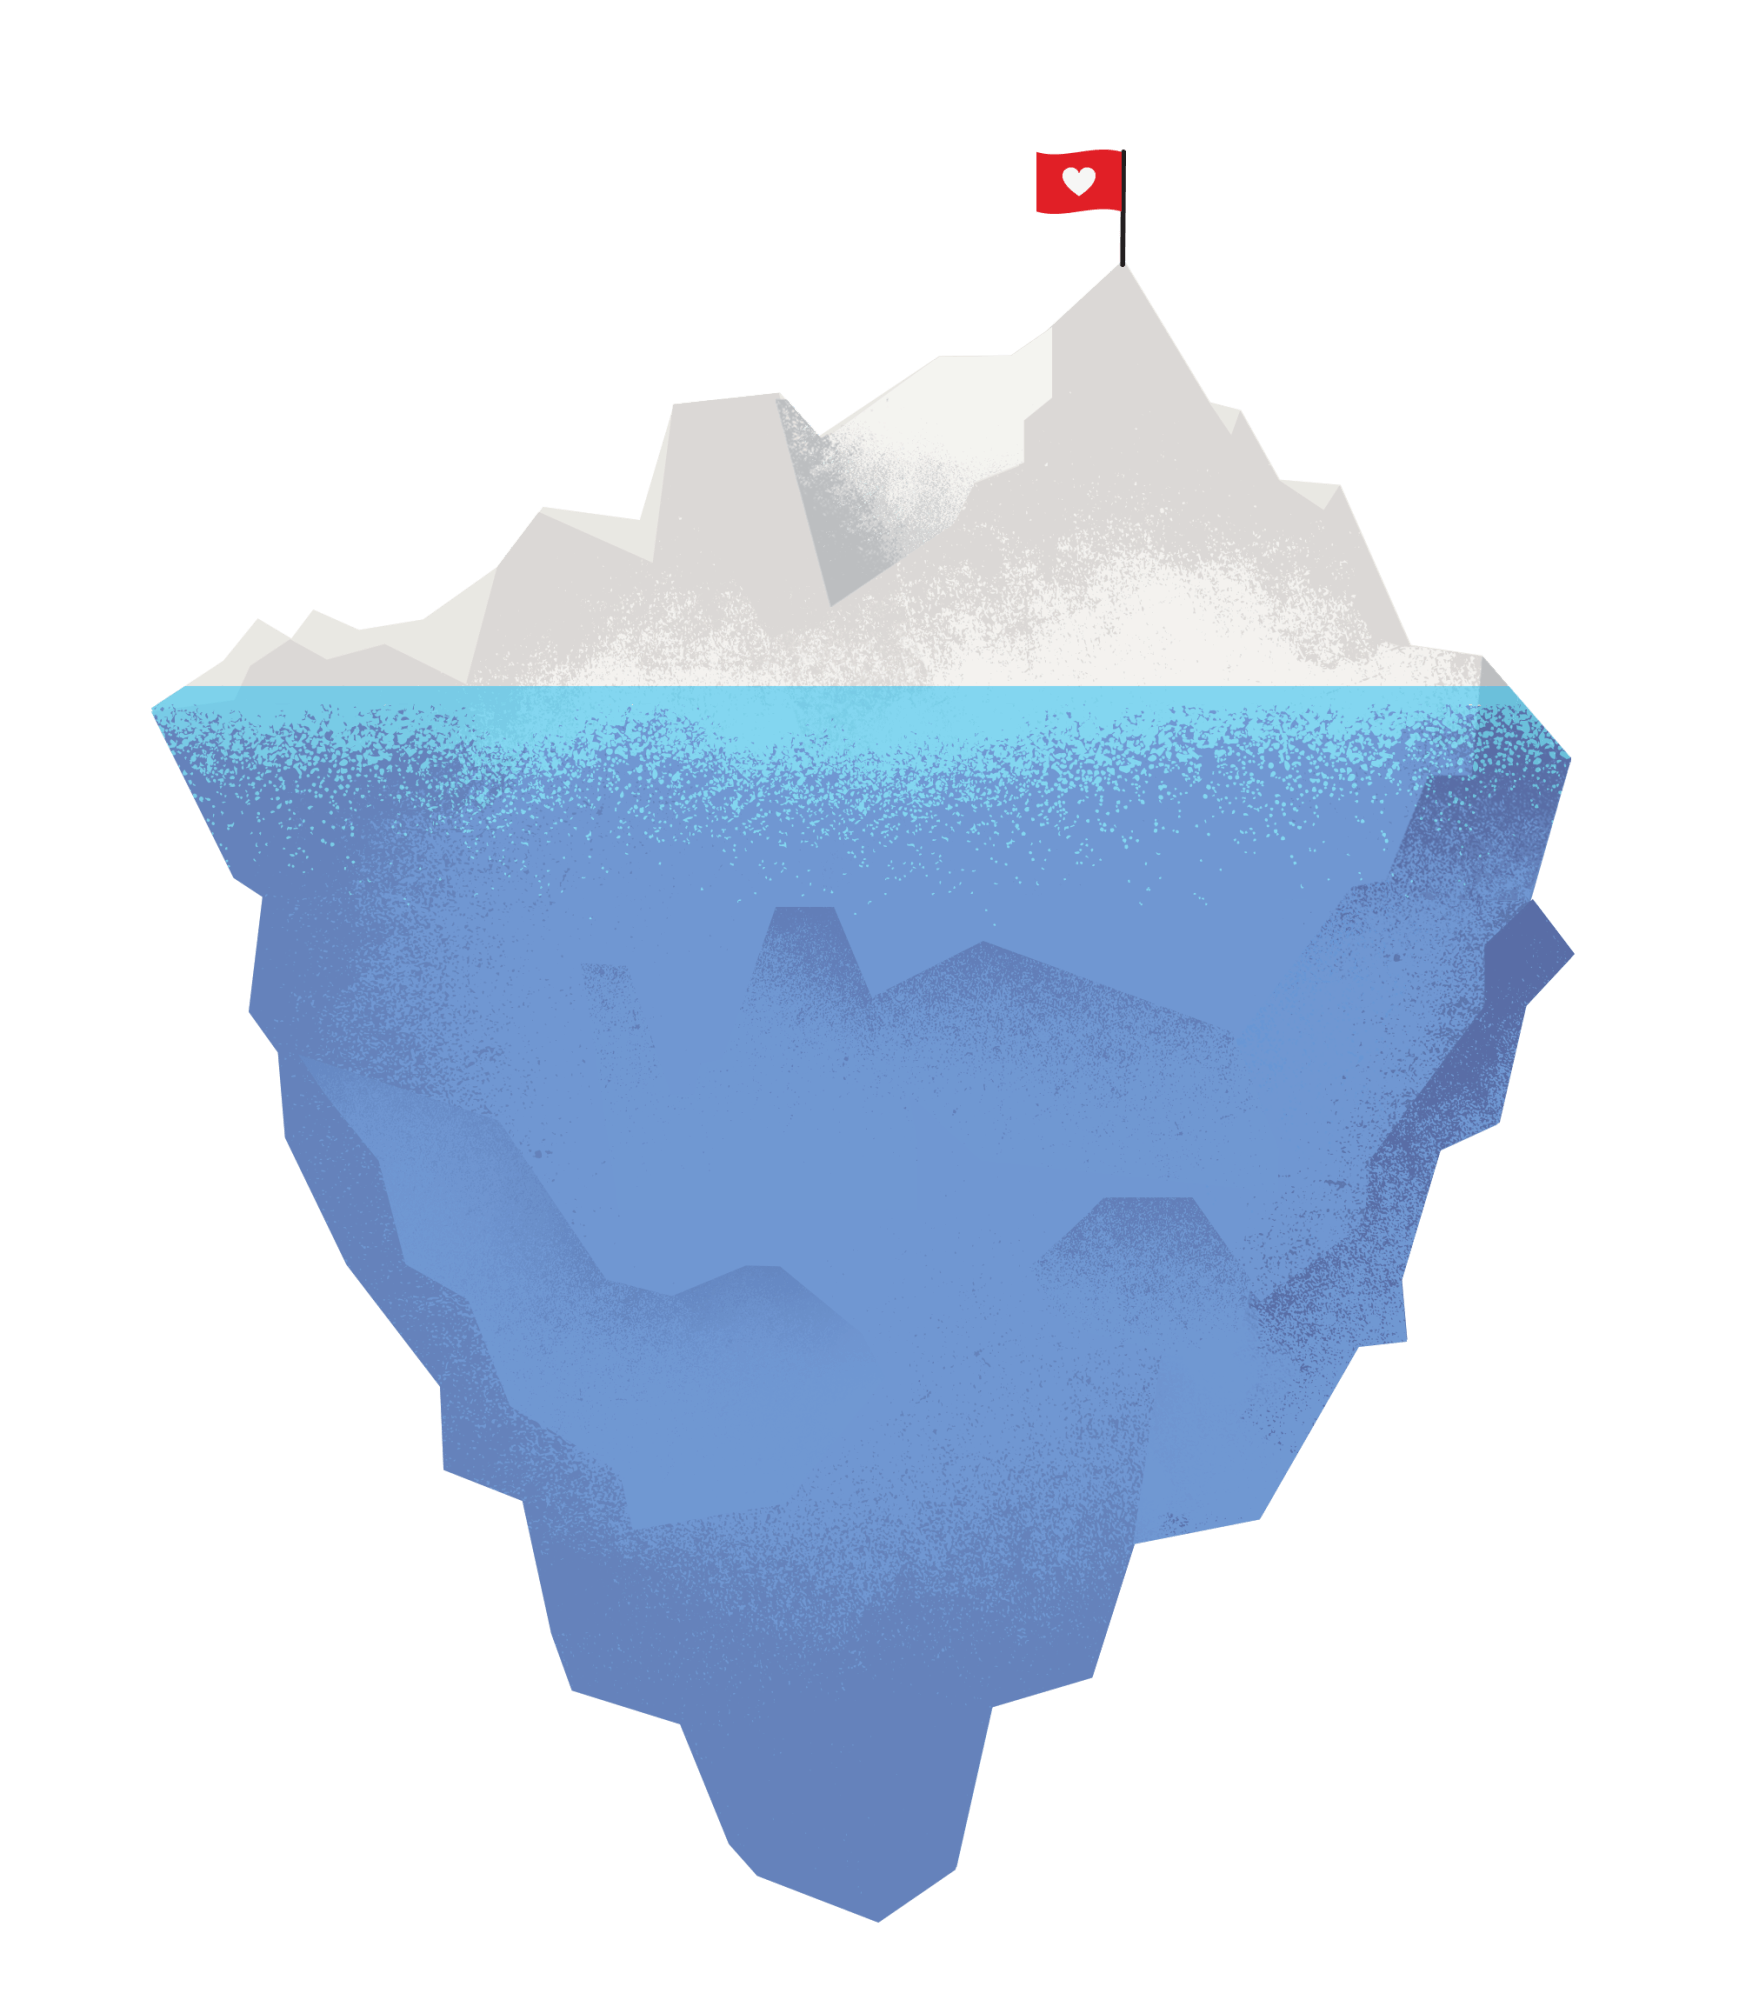 Arriba 100+ Imagen De Fondo Que Es Un Iceberg En Internet Cena Hermosa